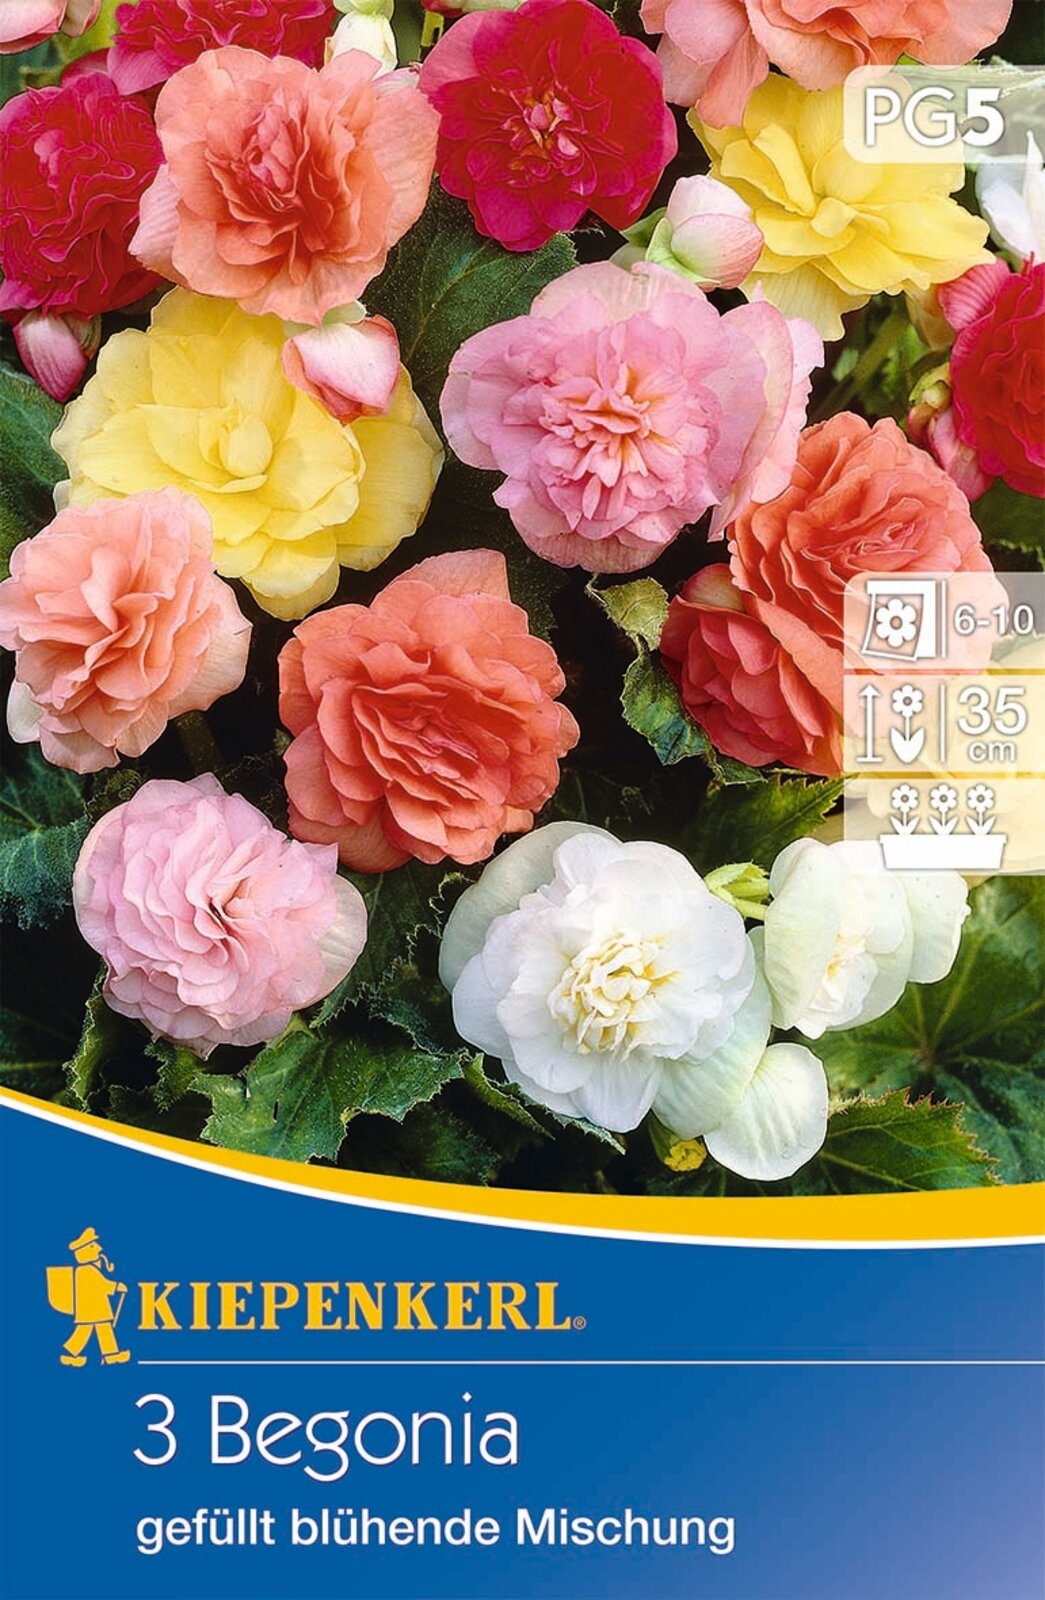 Virághagyma Gumós begónia (teltvirágú) színkeverék Kiepenkerl 3 db